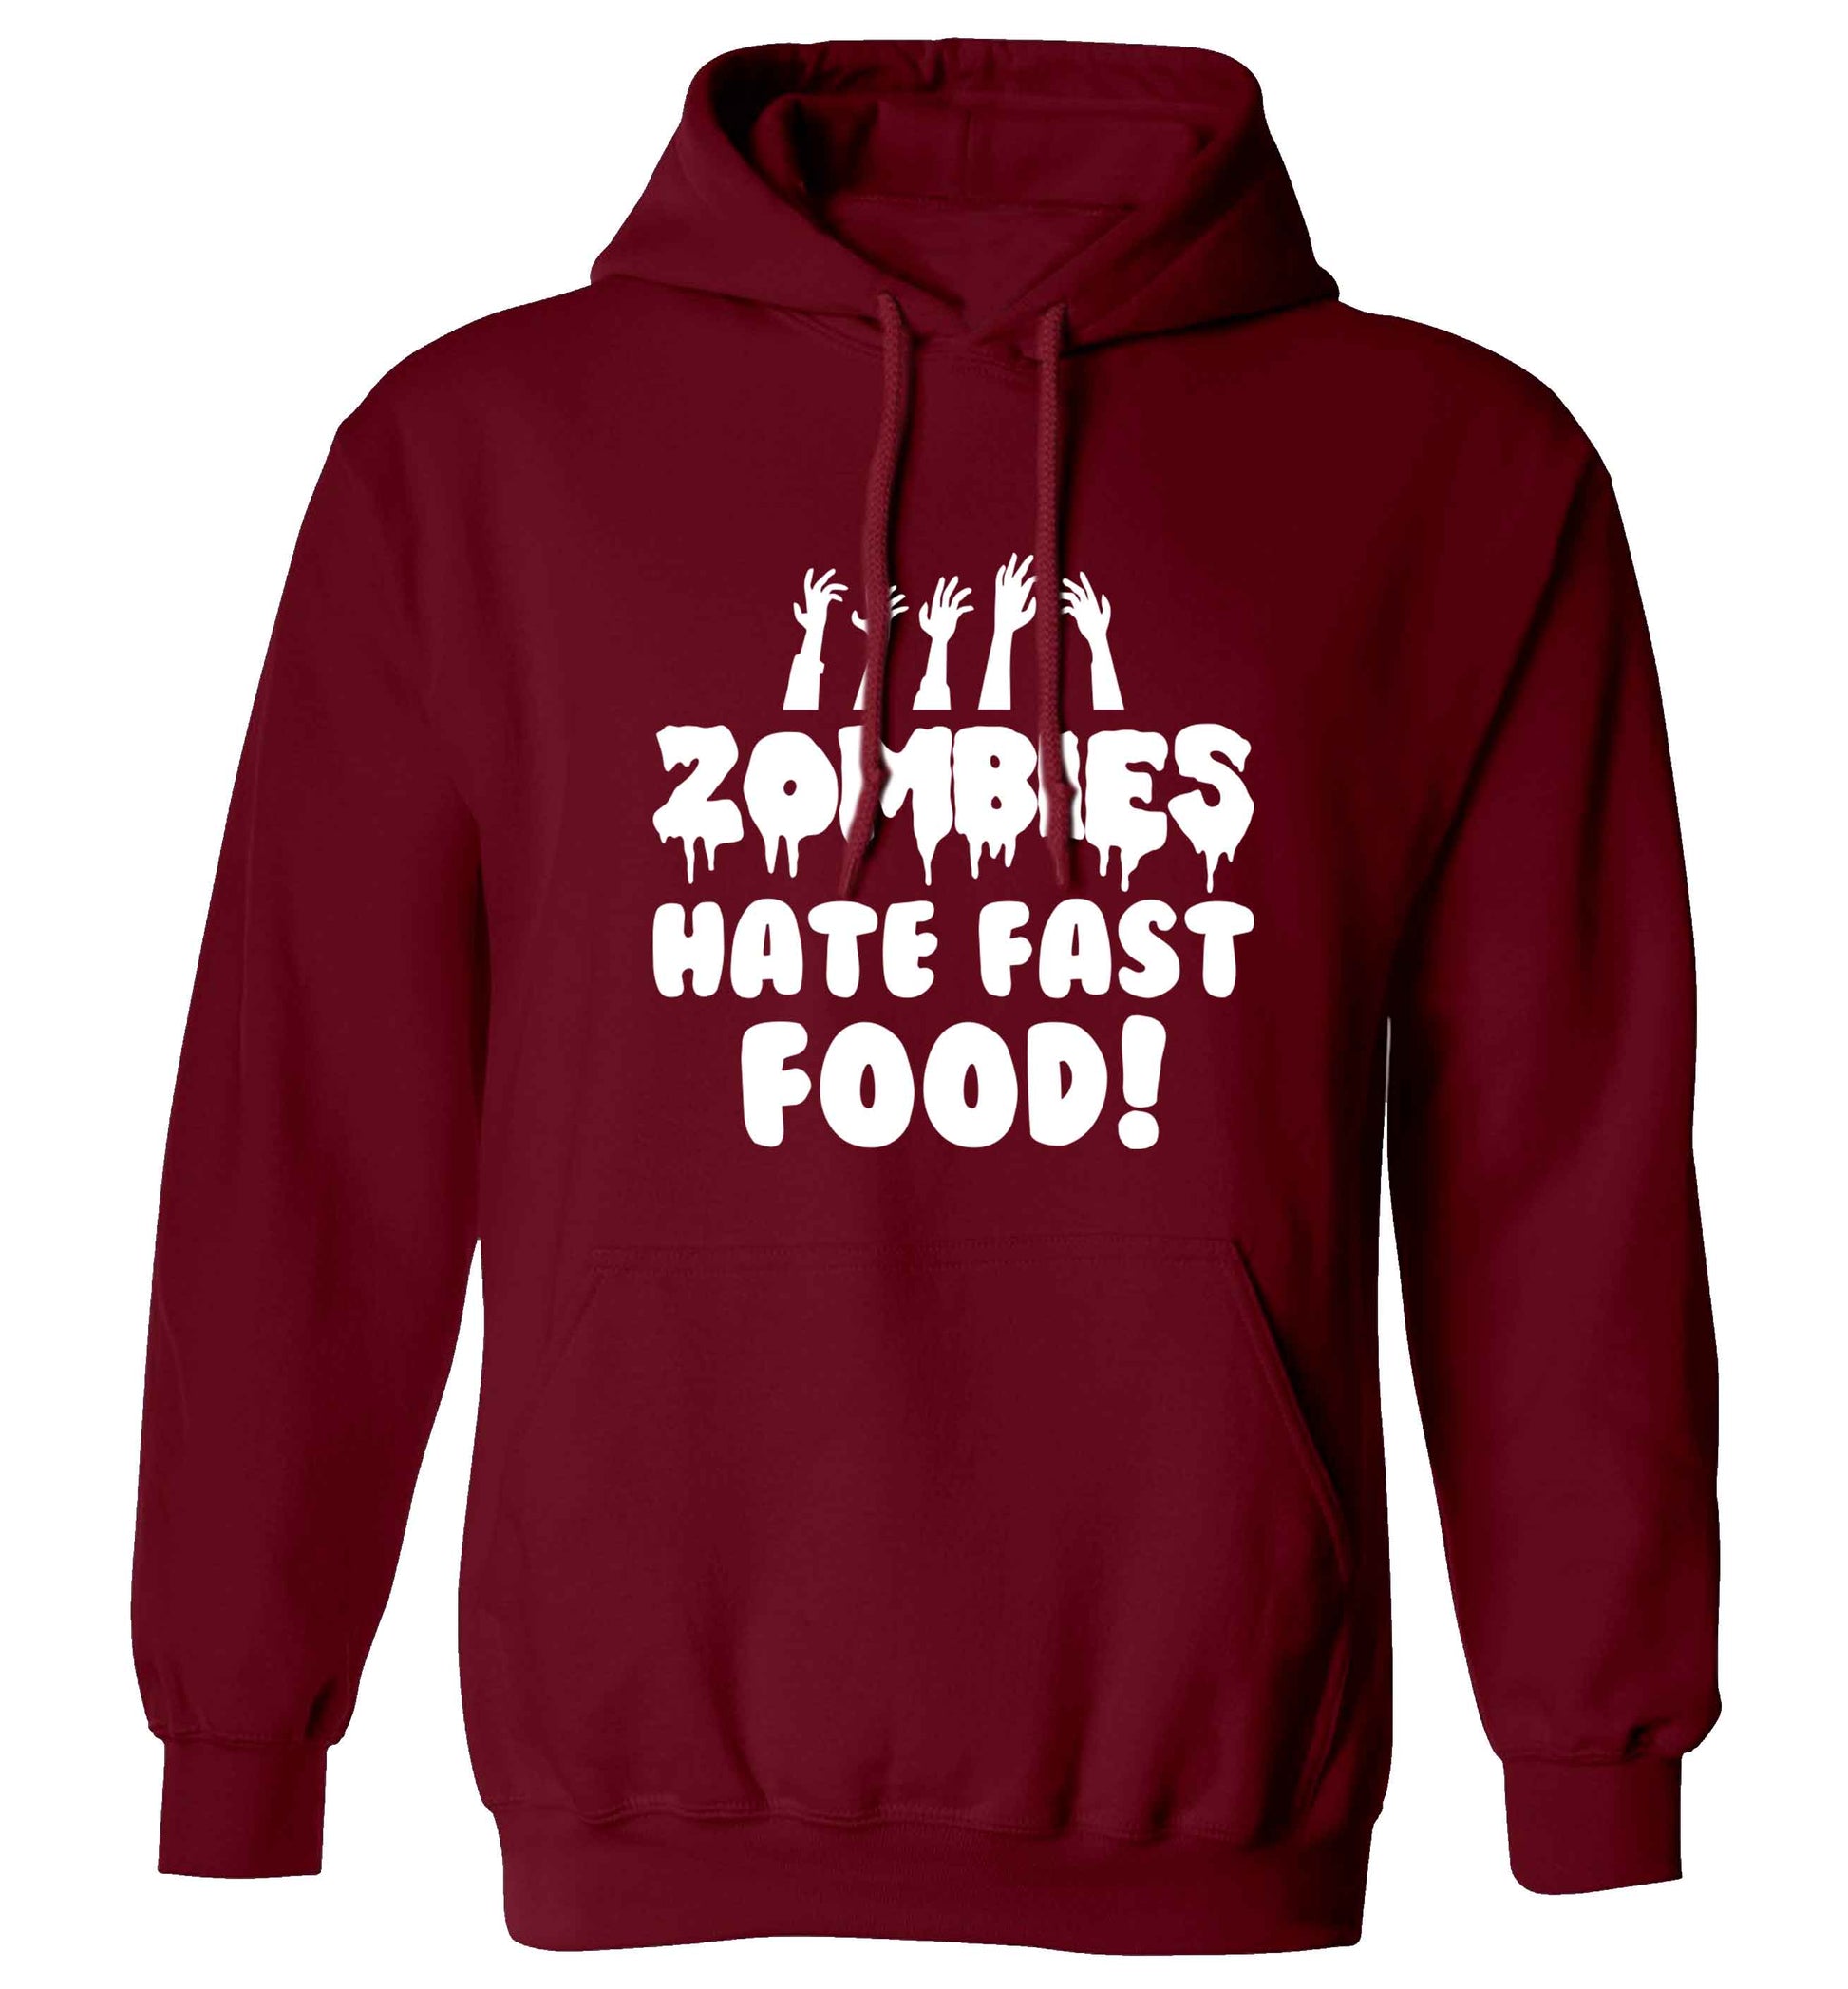 Zombies hate fast food adults unisex maroon hoodie 2XL